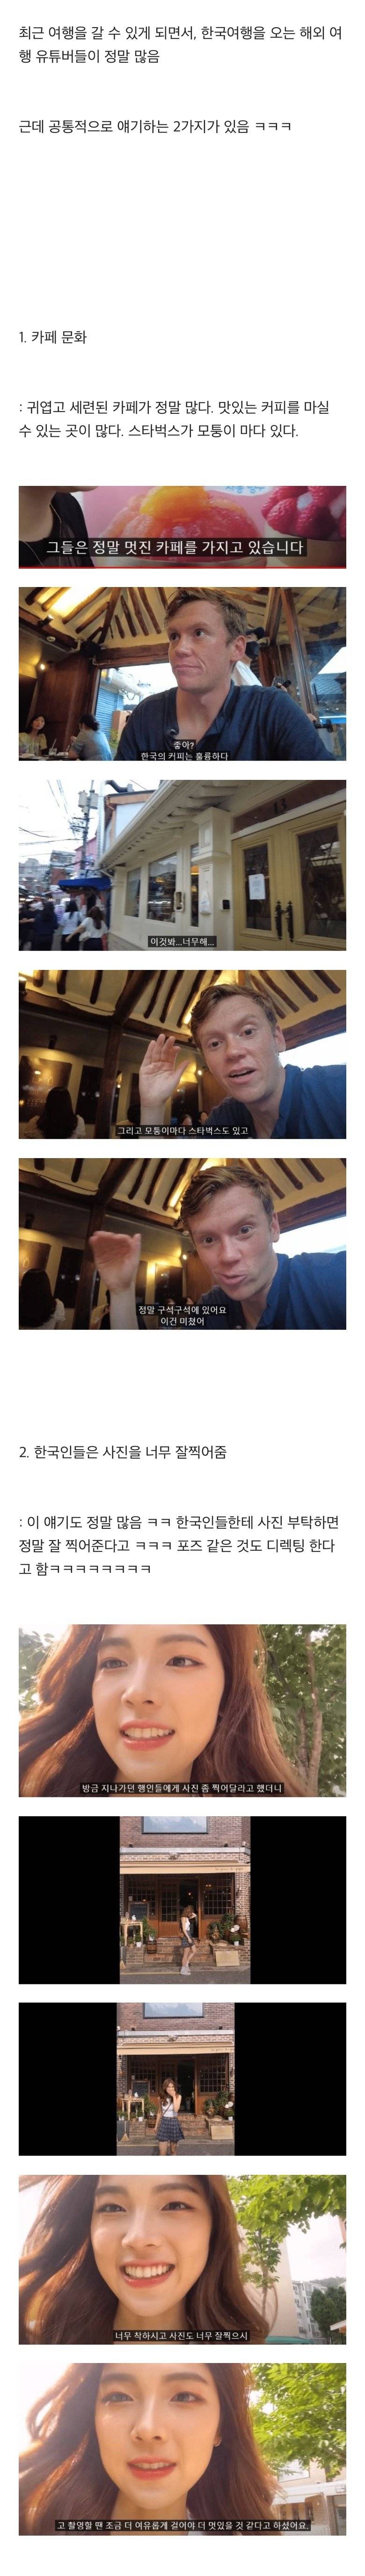 한국여행 오는 해외 유튜버들의 공통적 의견